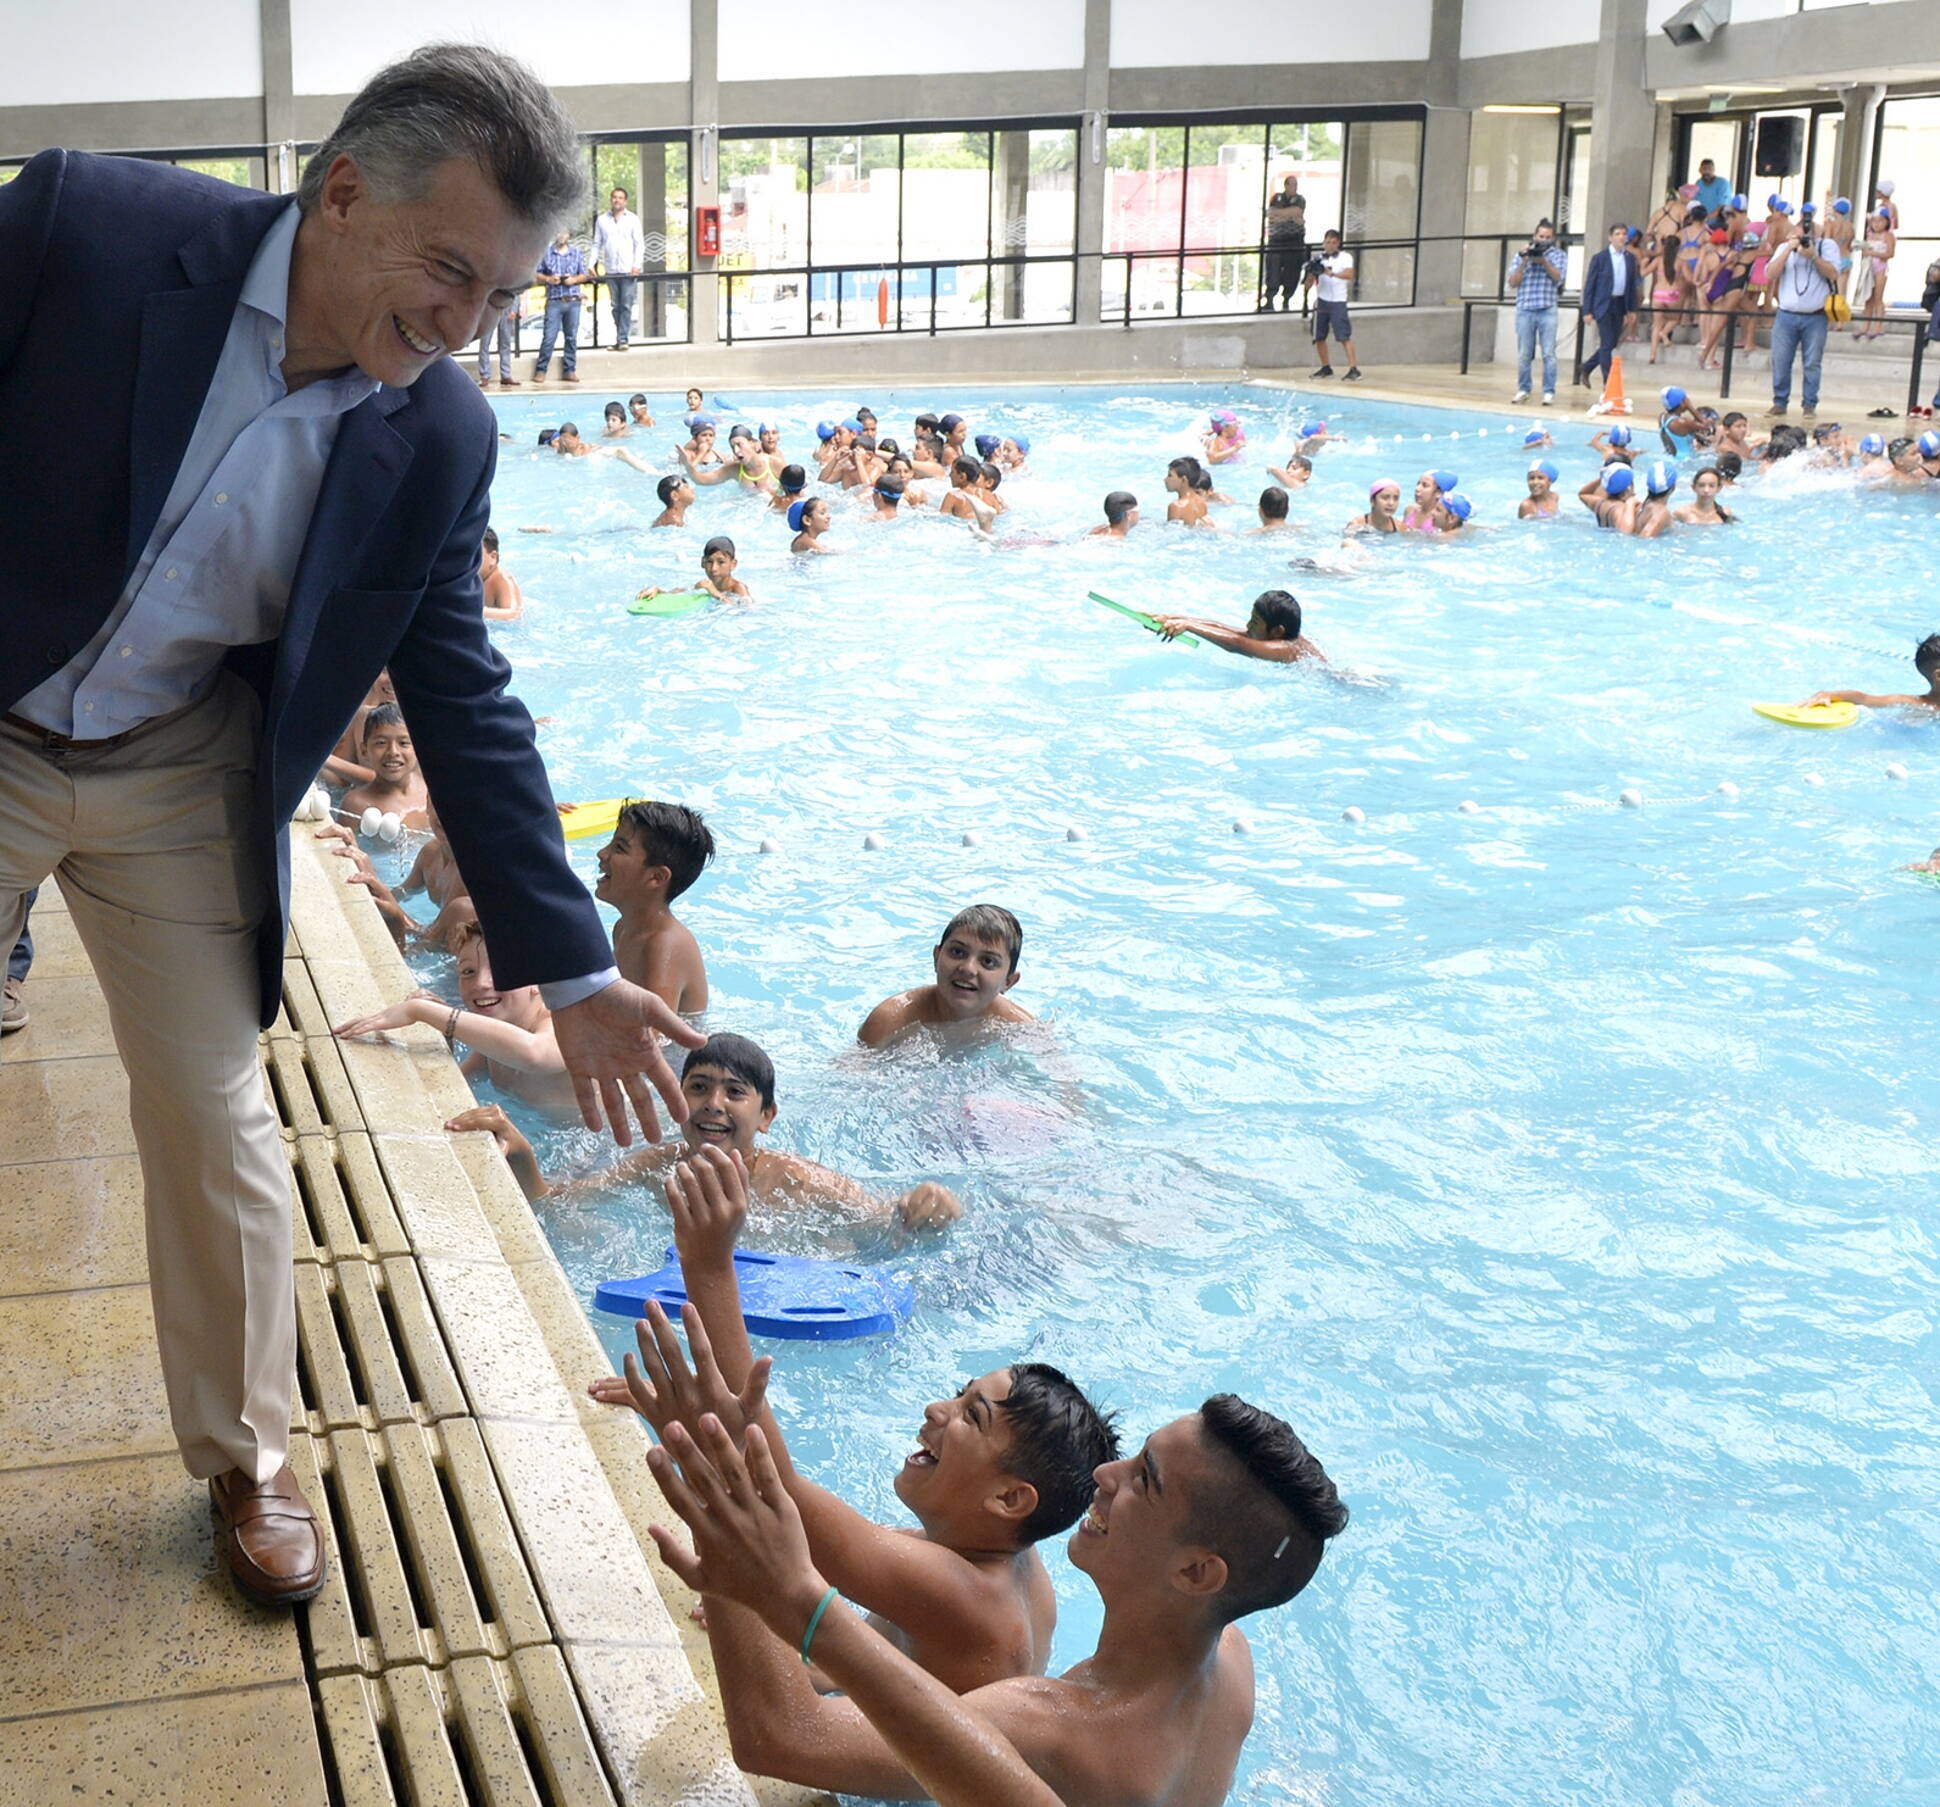 El presidente Macri visitó una colonia de vacaciones en el municipio de San Martín